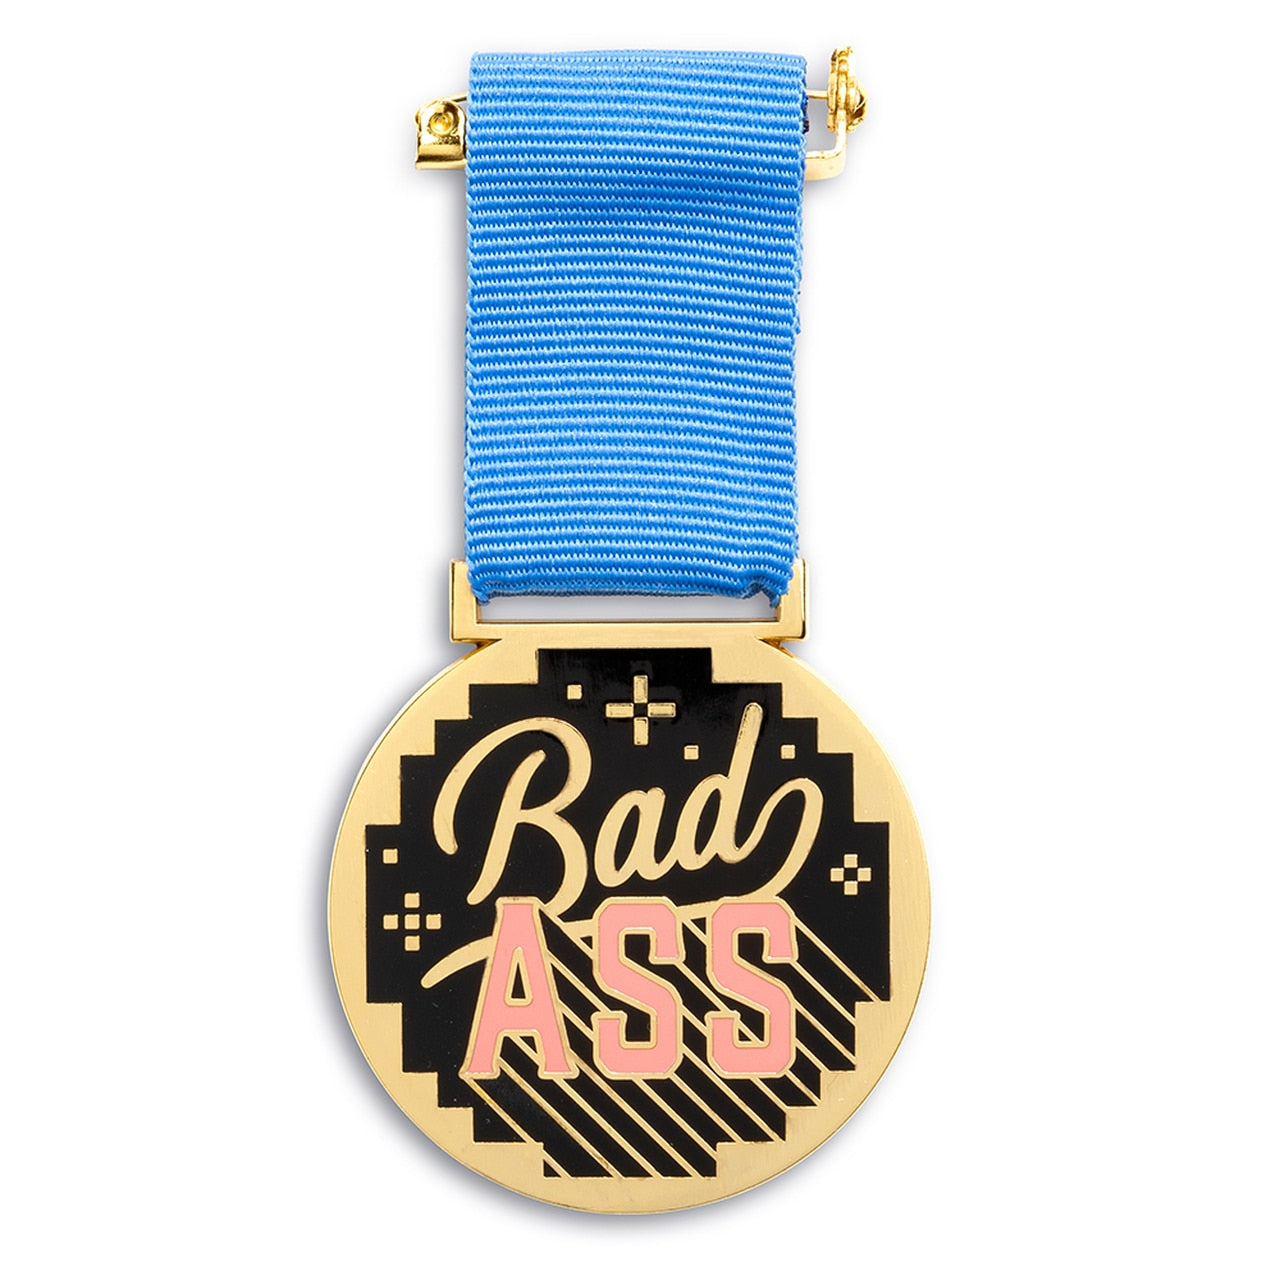 Medal " Bad ASS "